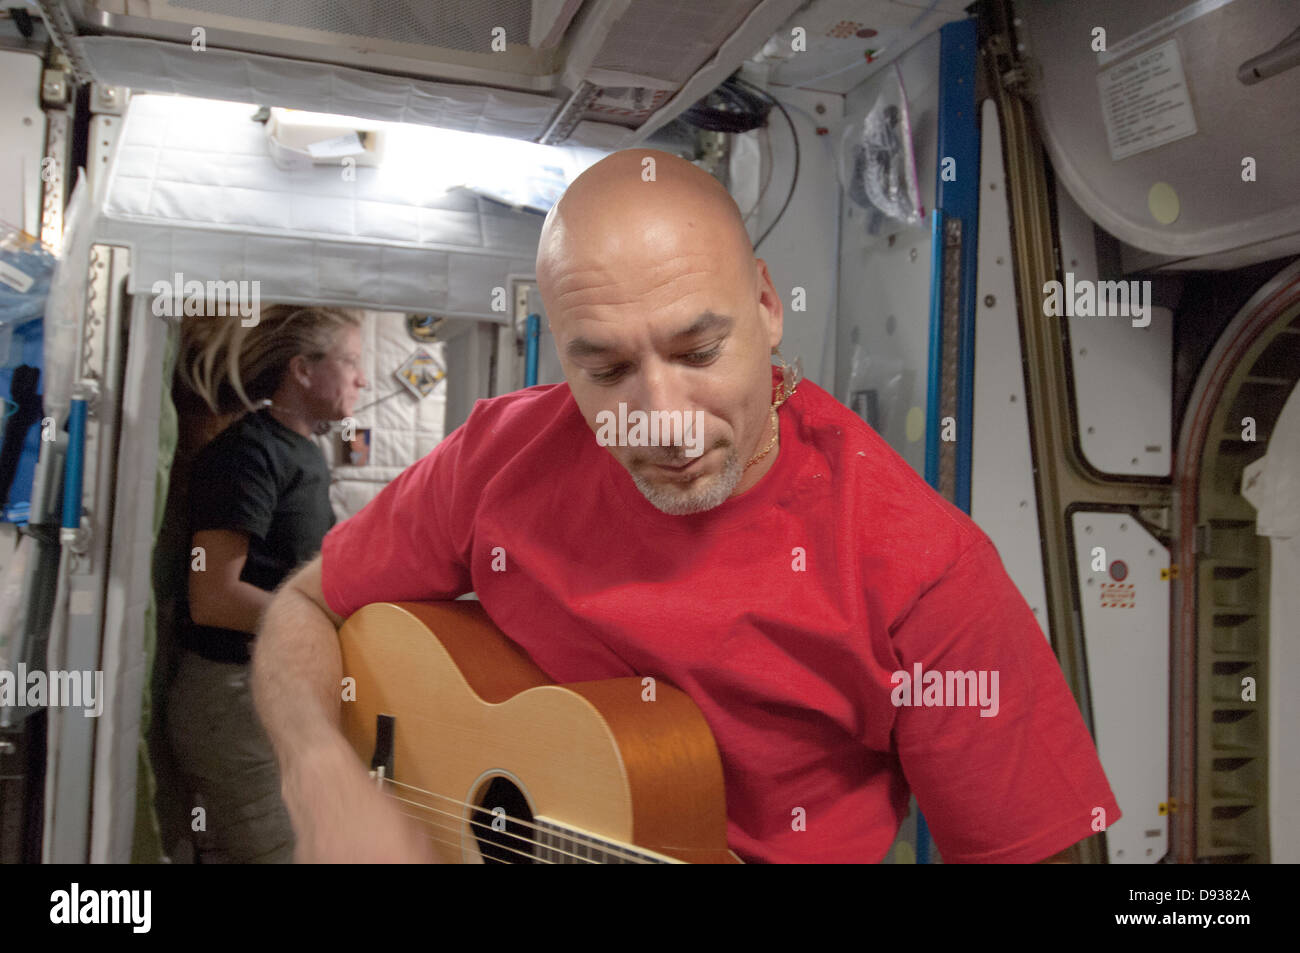 Expedición de la ISS 36 Ingeniero de vuelo de la Agencia Espacial Europea Luca Parmitano desempeña una guitarra durante algunos de su tiempo fuera de servicio a bordo de la Estación Espacial Internacional el 31 de mayo de 2013. Foto de stock